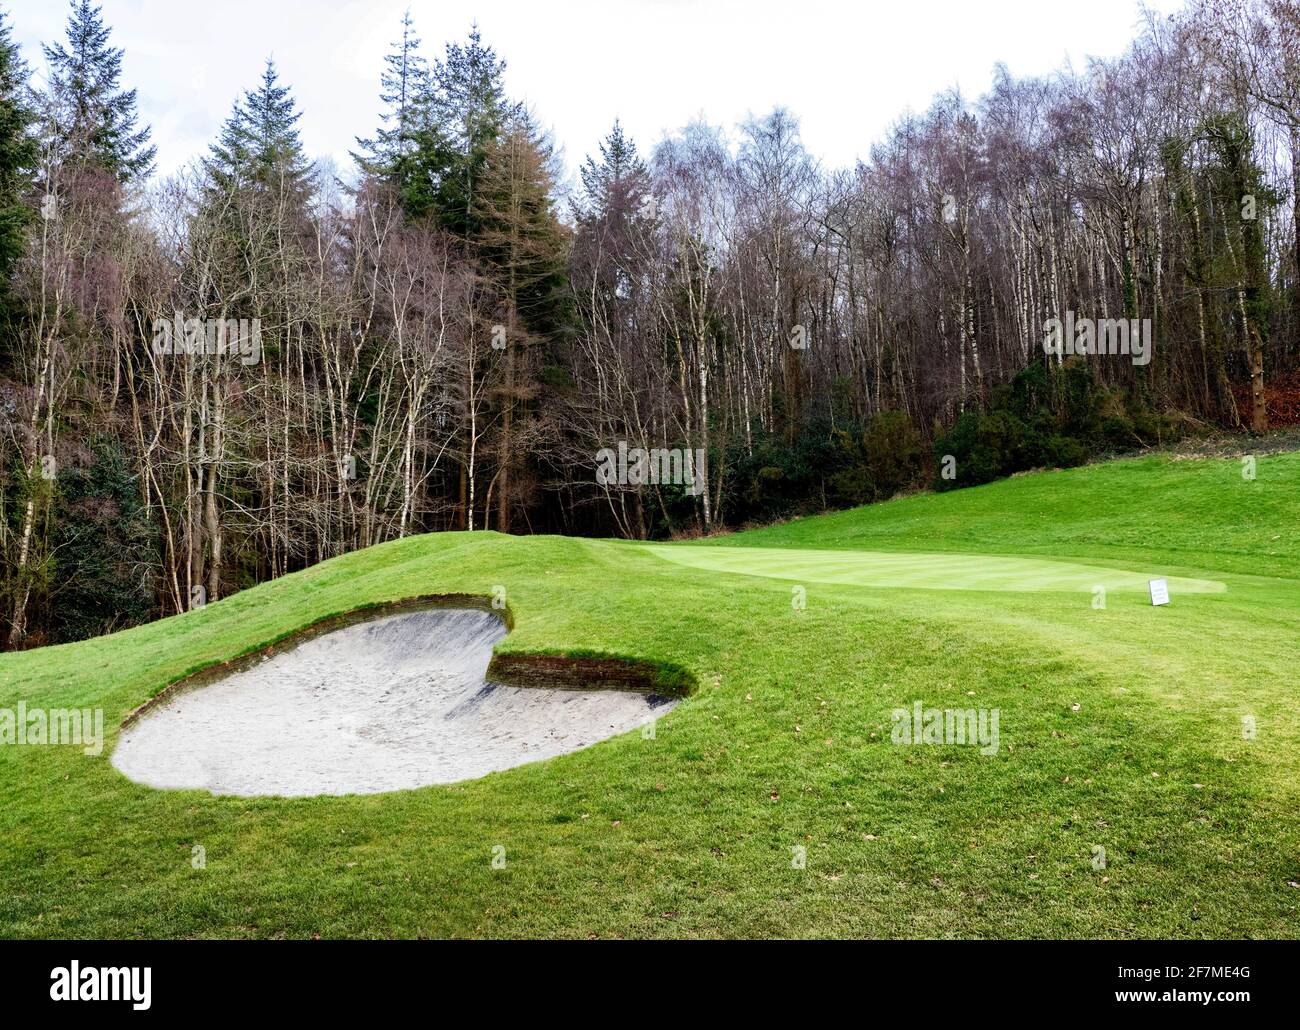 Golfplatz mit herzförmigem Bunker - Großbritannien Stockfoto